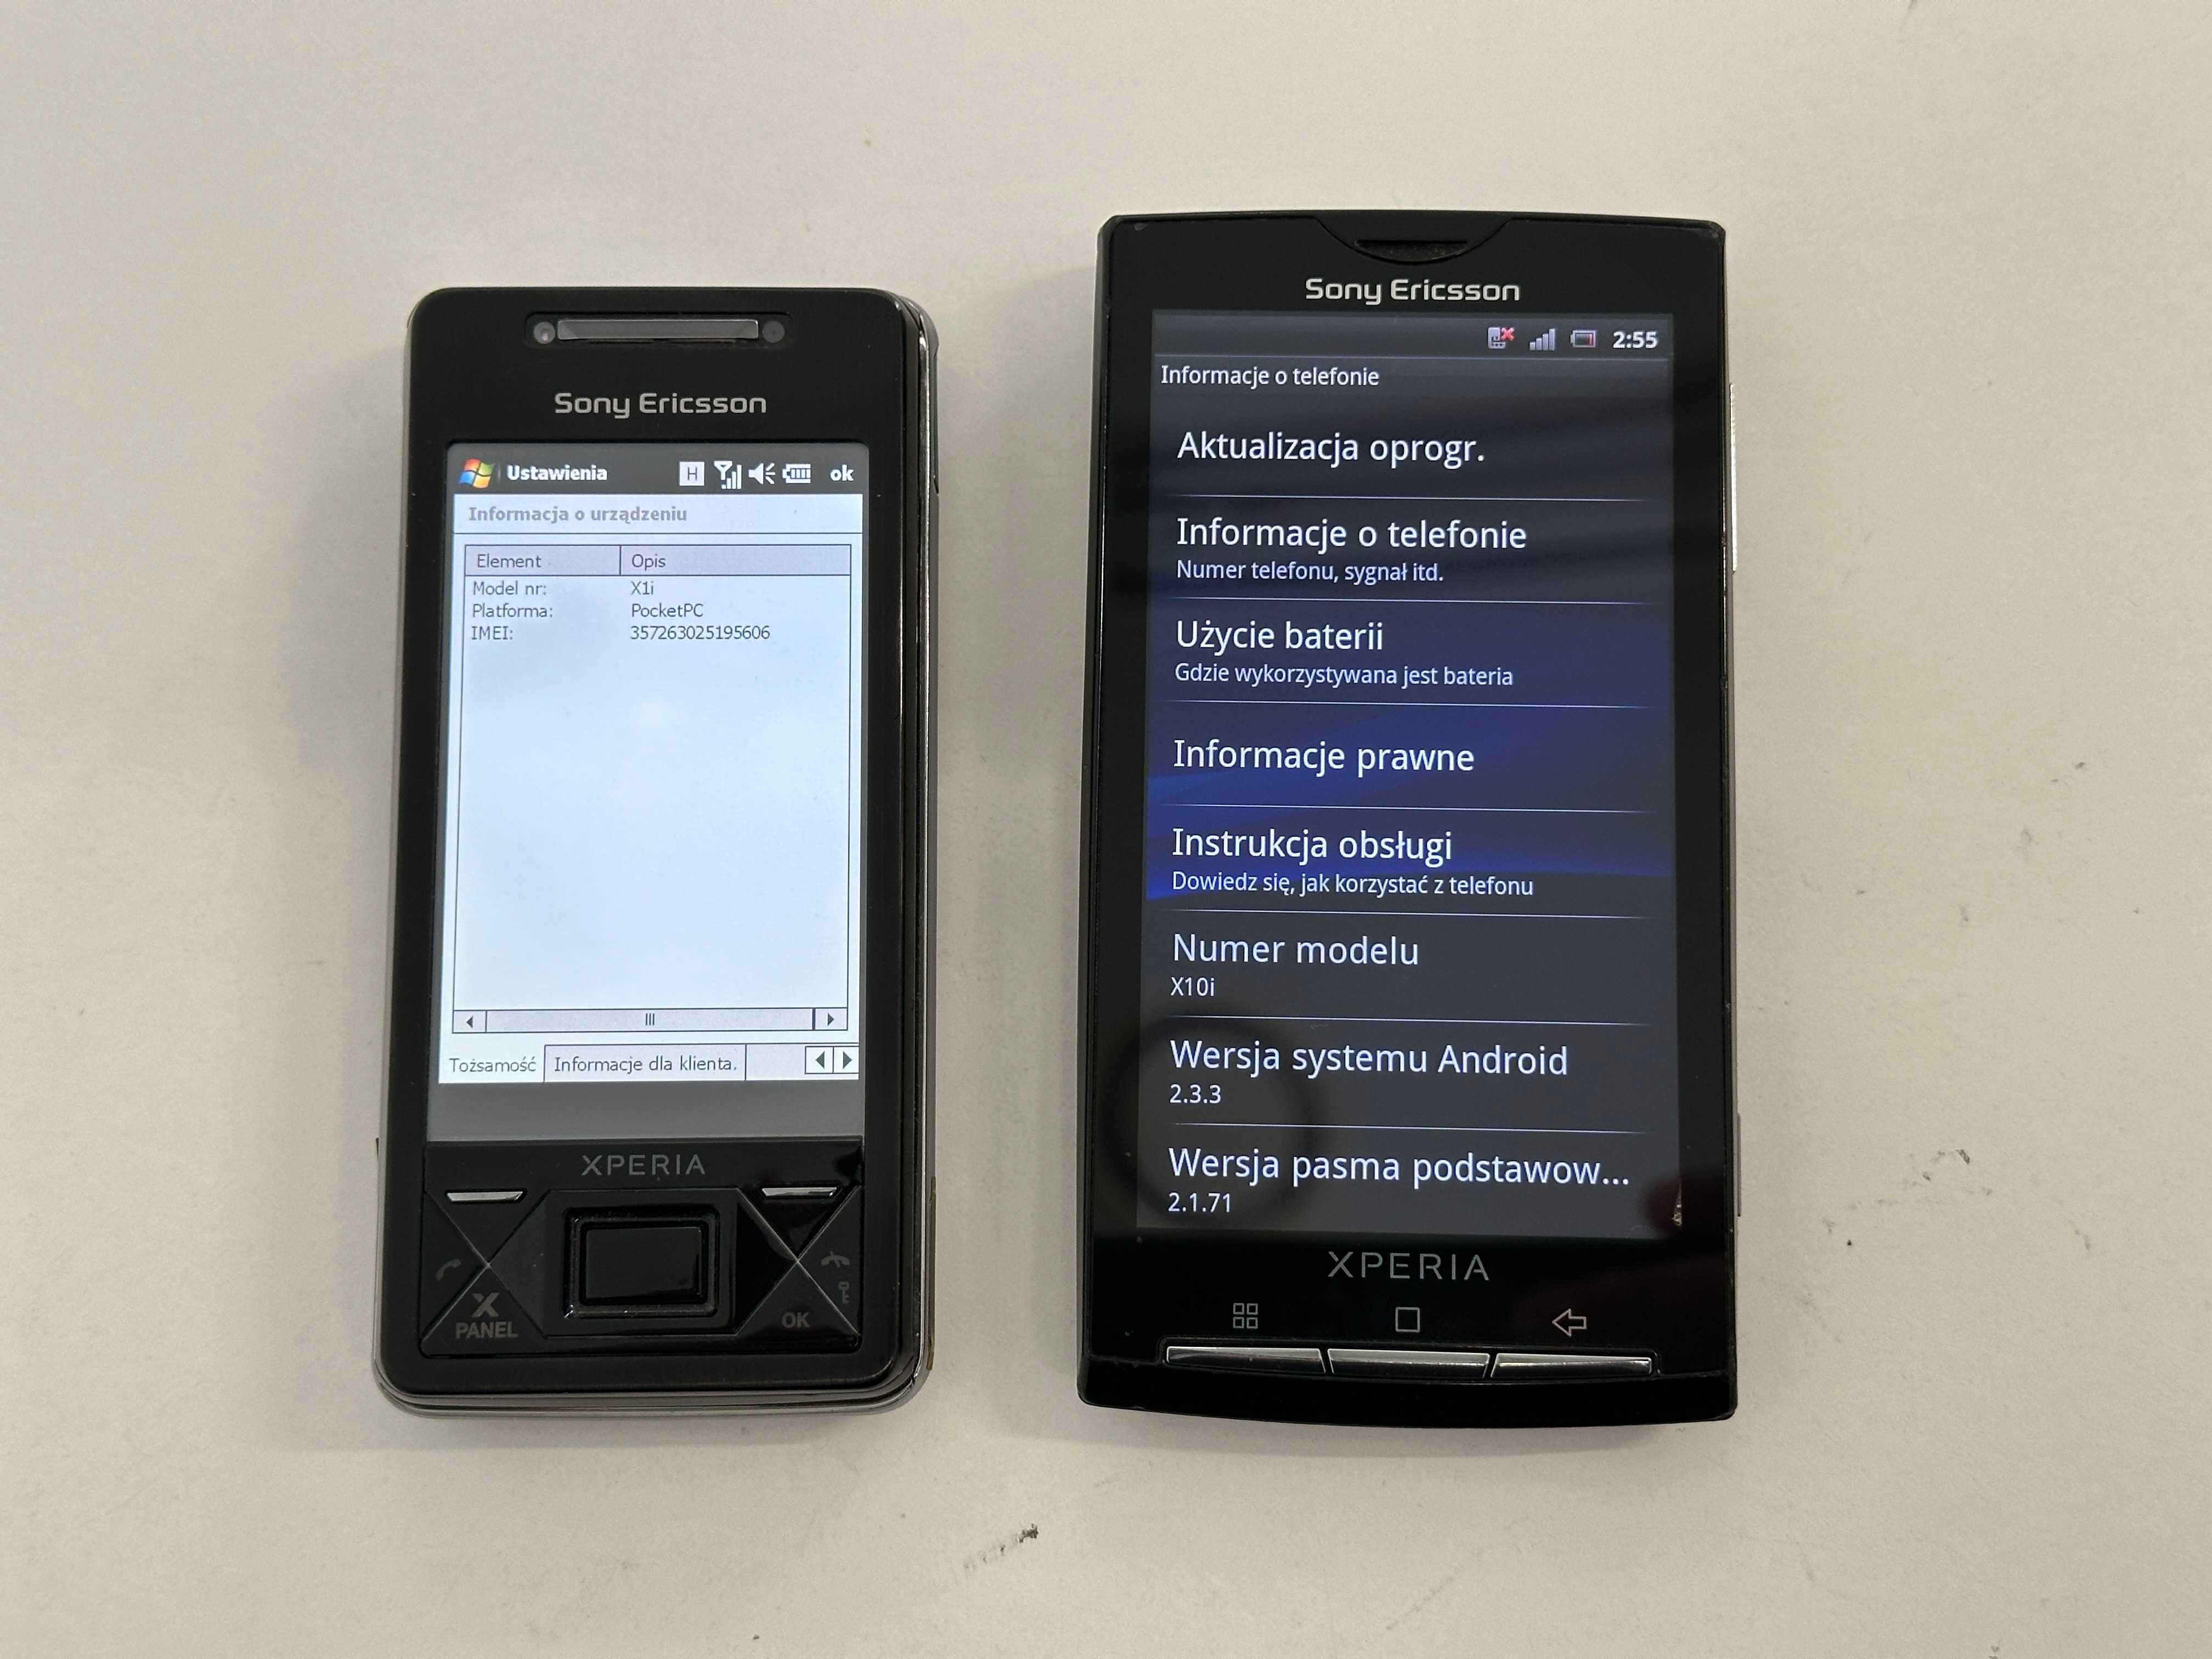 2x Sony Ericsson - Xperia X1 oraz X10 dla kolekcjonera, WARTO